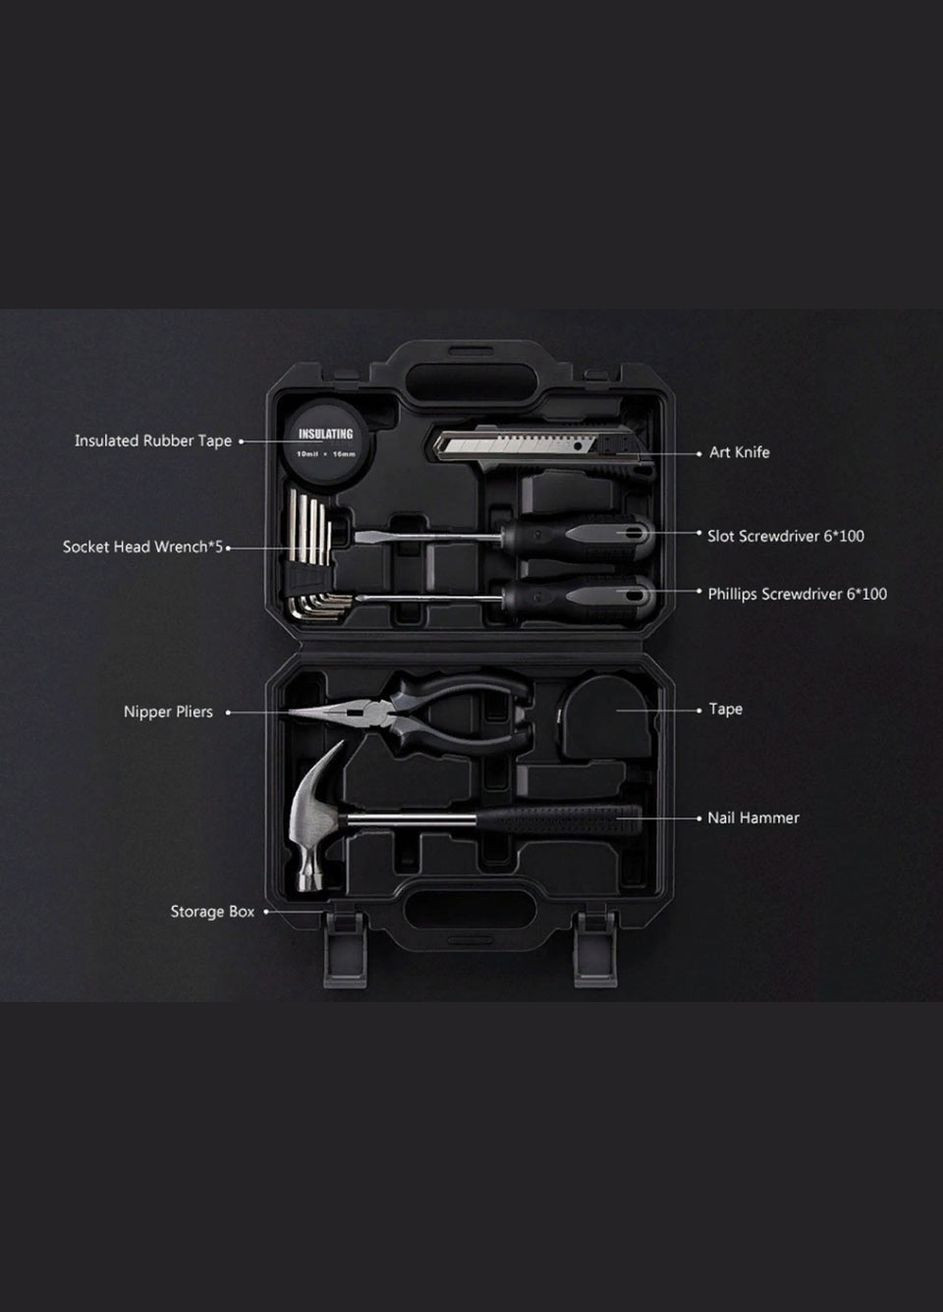 Набор инструментов Xiaomi Jiuxun Tools Toolbox 12*1 PCS No Brand (264743042)